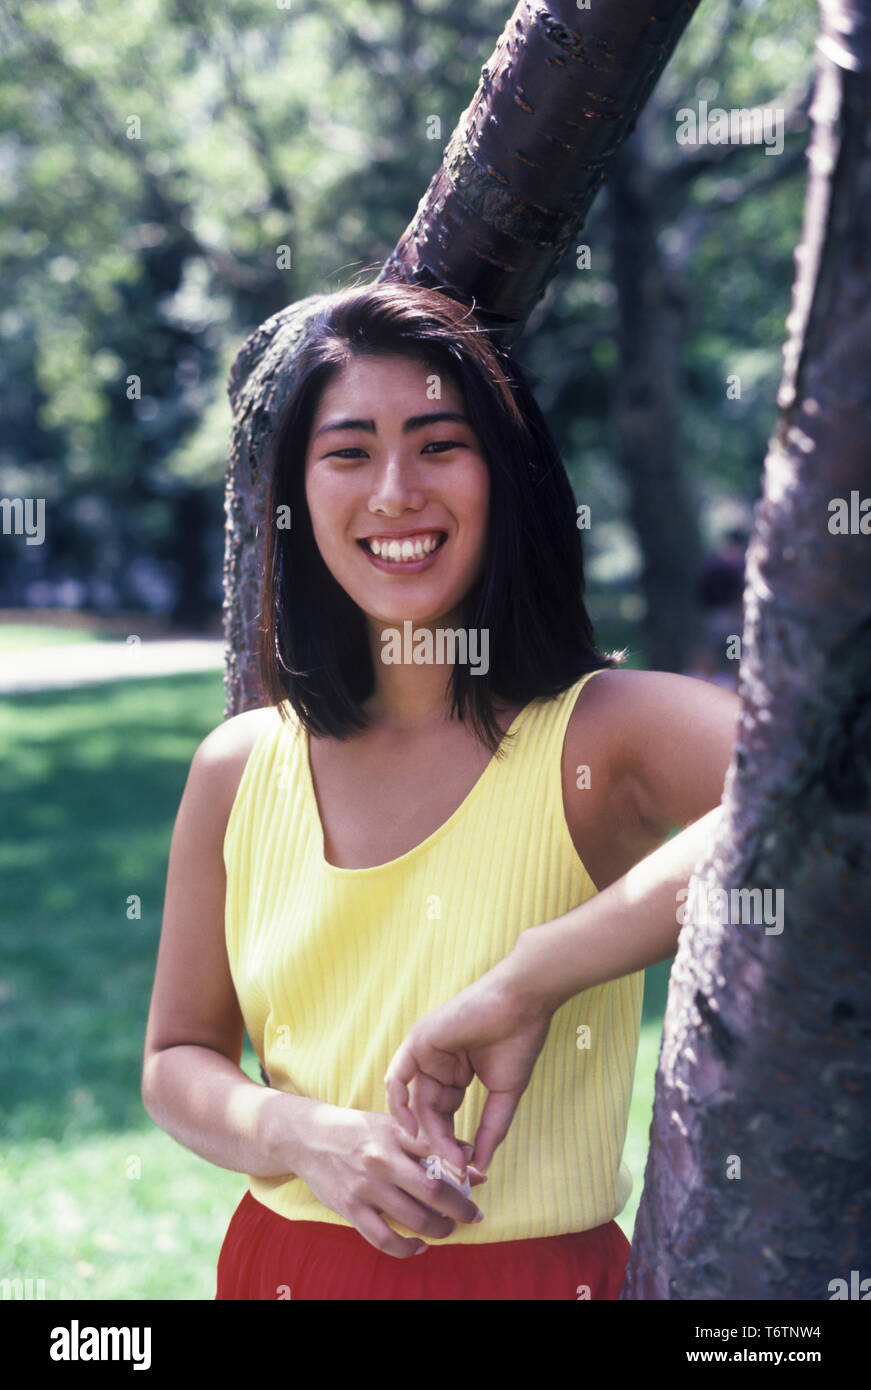 1987 historische junge asiatische Frau IM PARK TRAGEN ÜBUNG OUTFIT Stockfoto